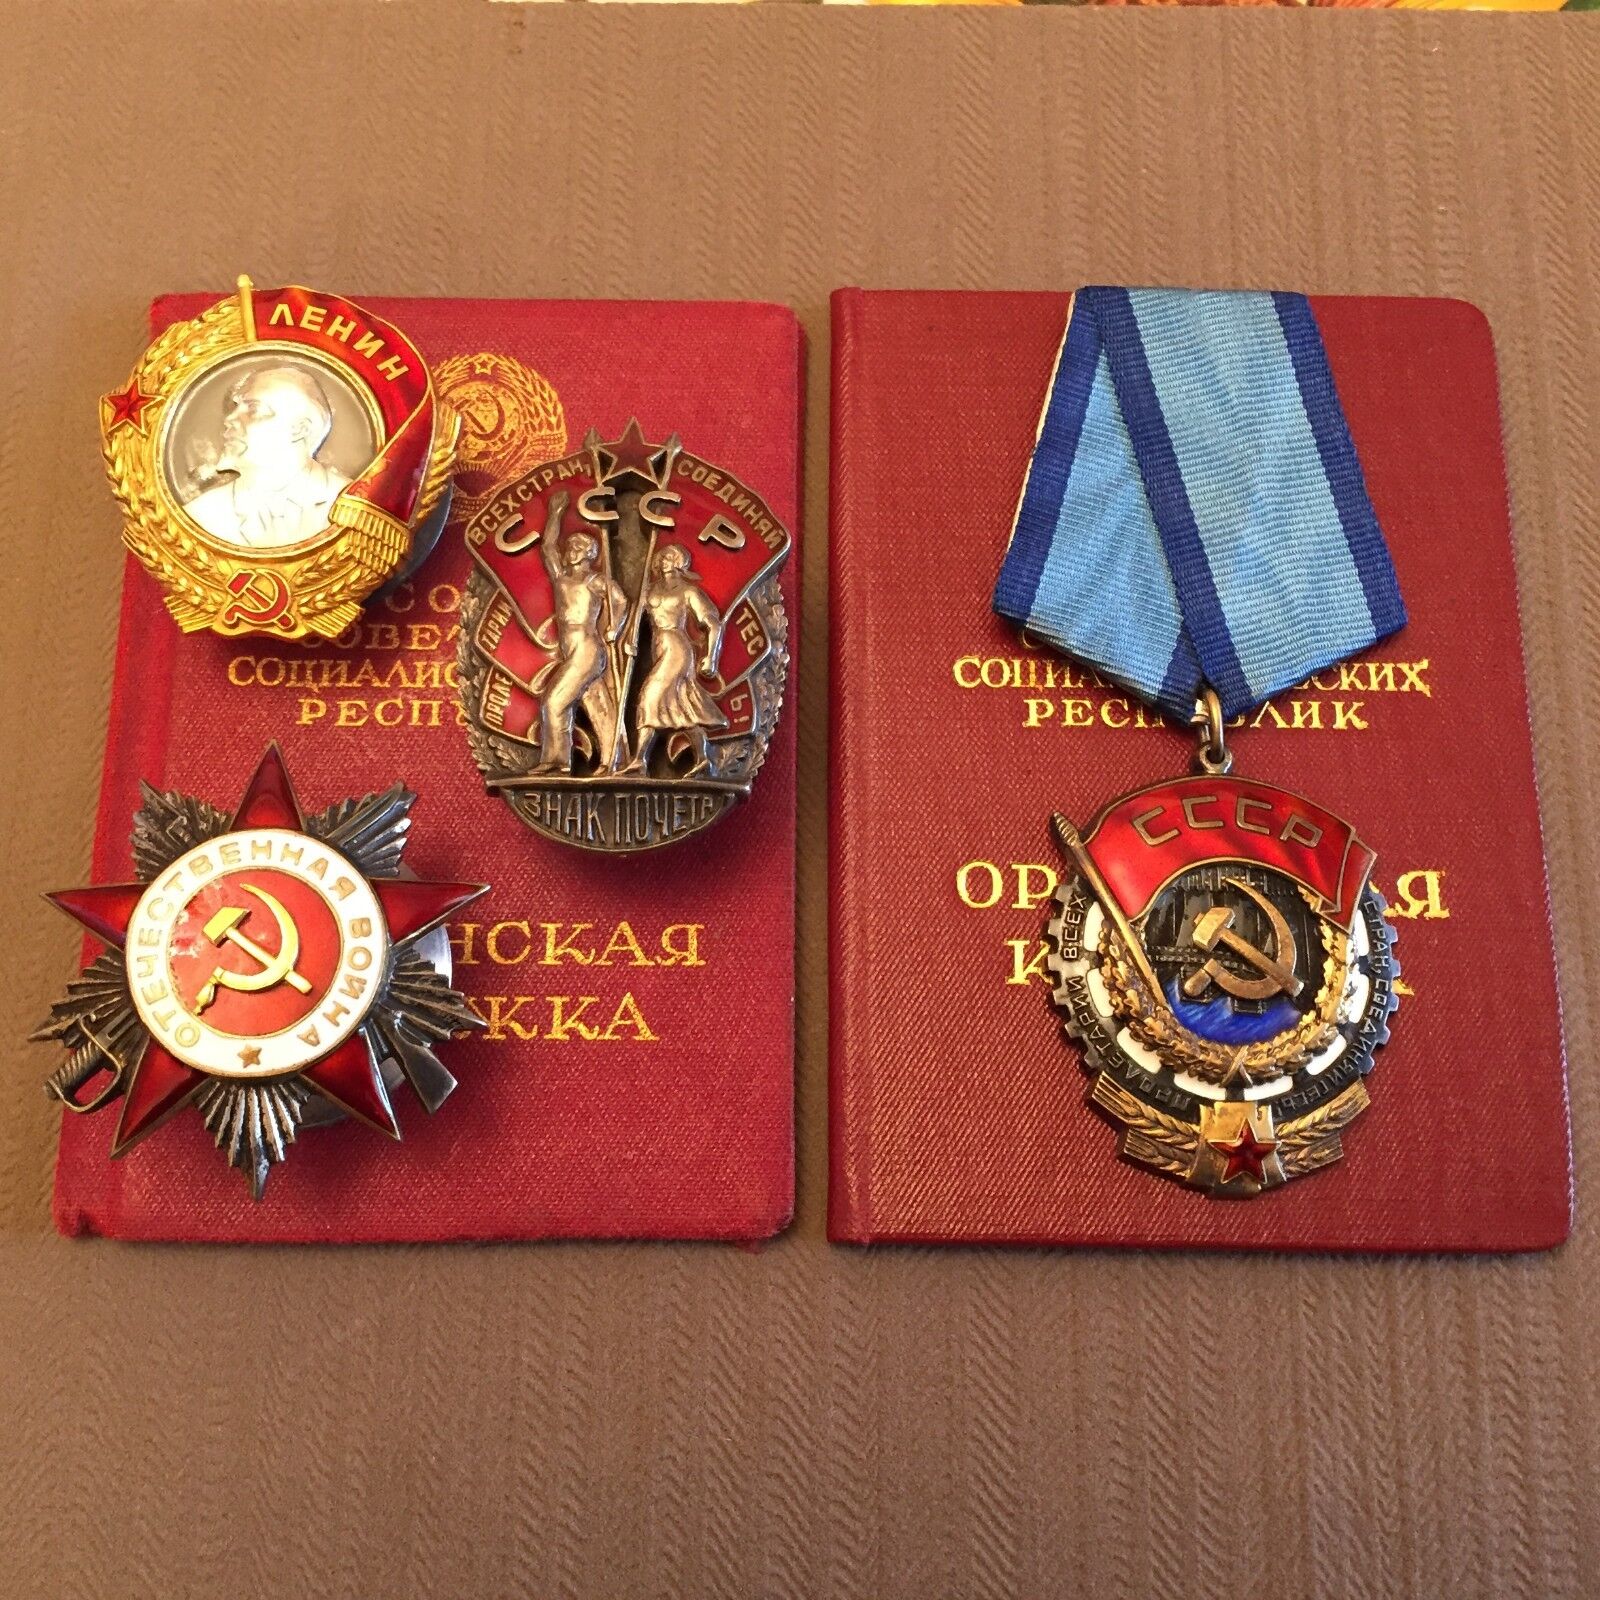 FAMOUS MAN LENIN ORDER BADGE of HONOR RED BANNER SOVIET ORDER SET GROUP AWARDS